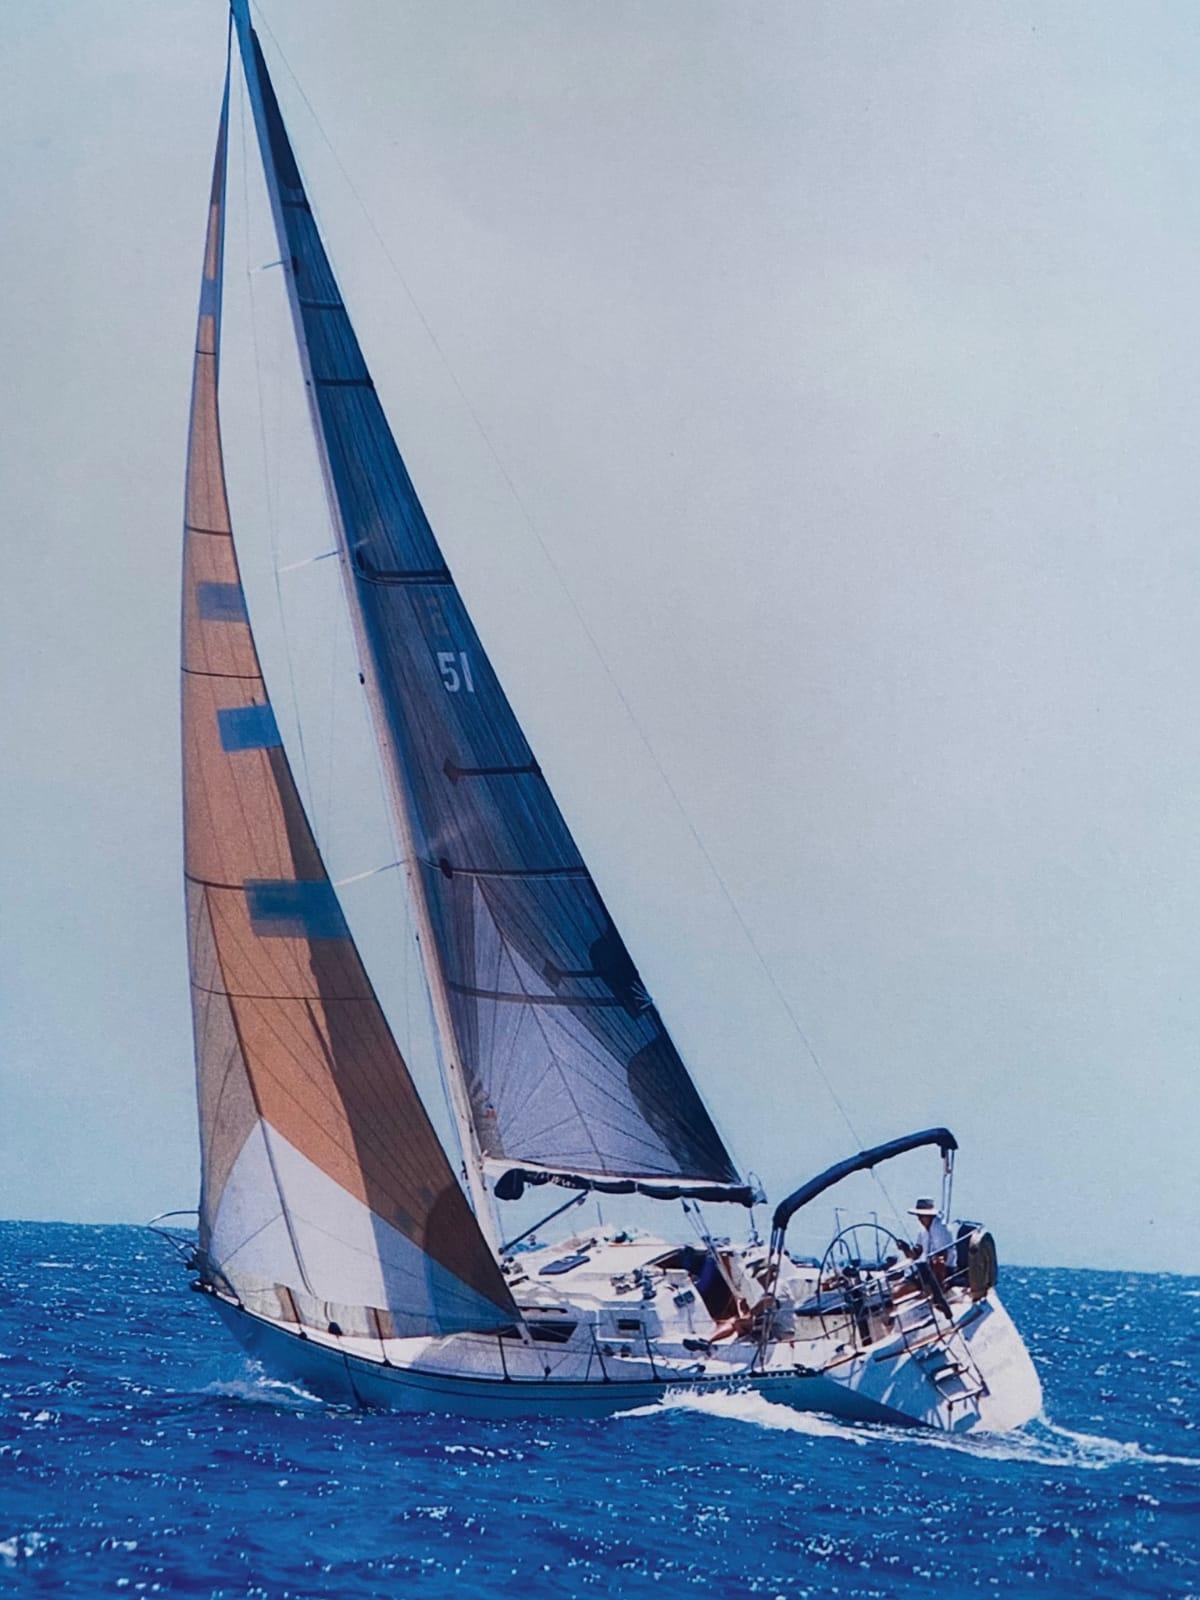 c&c 38 sailboat review